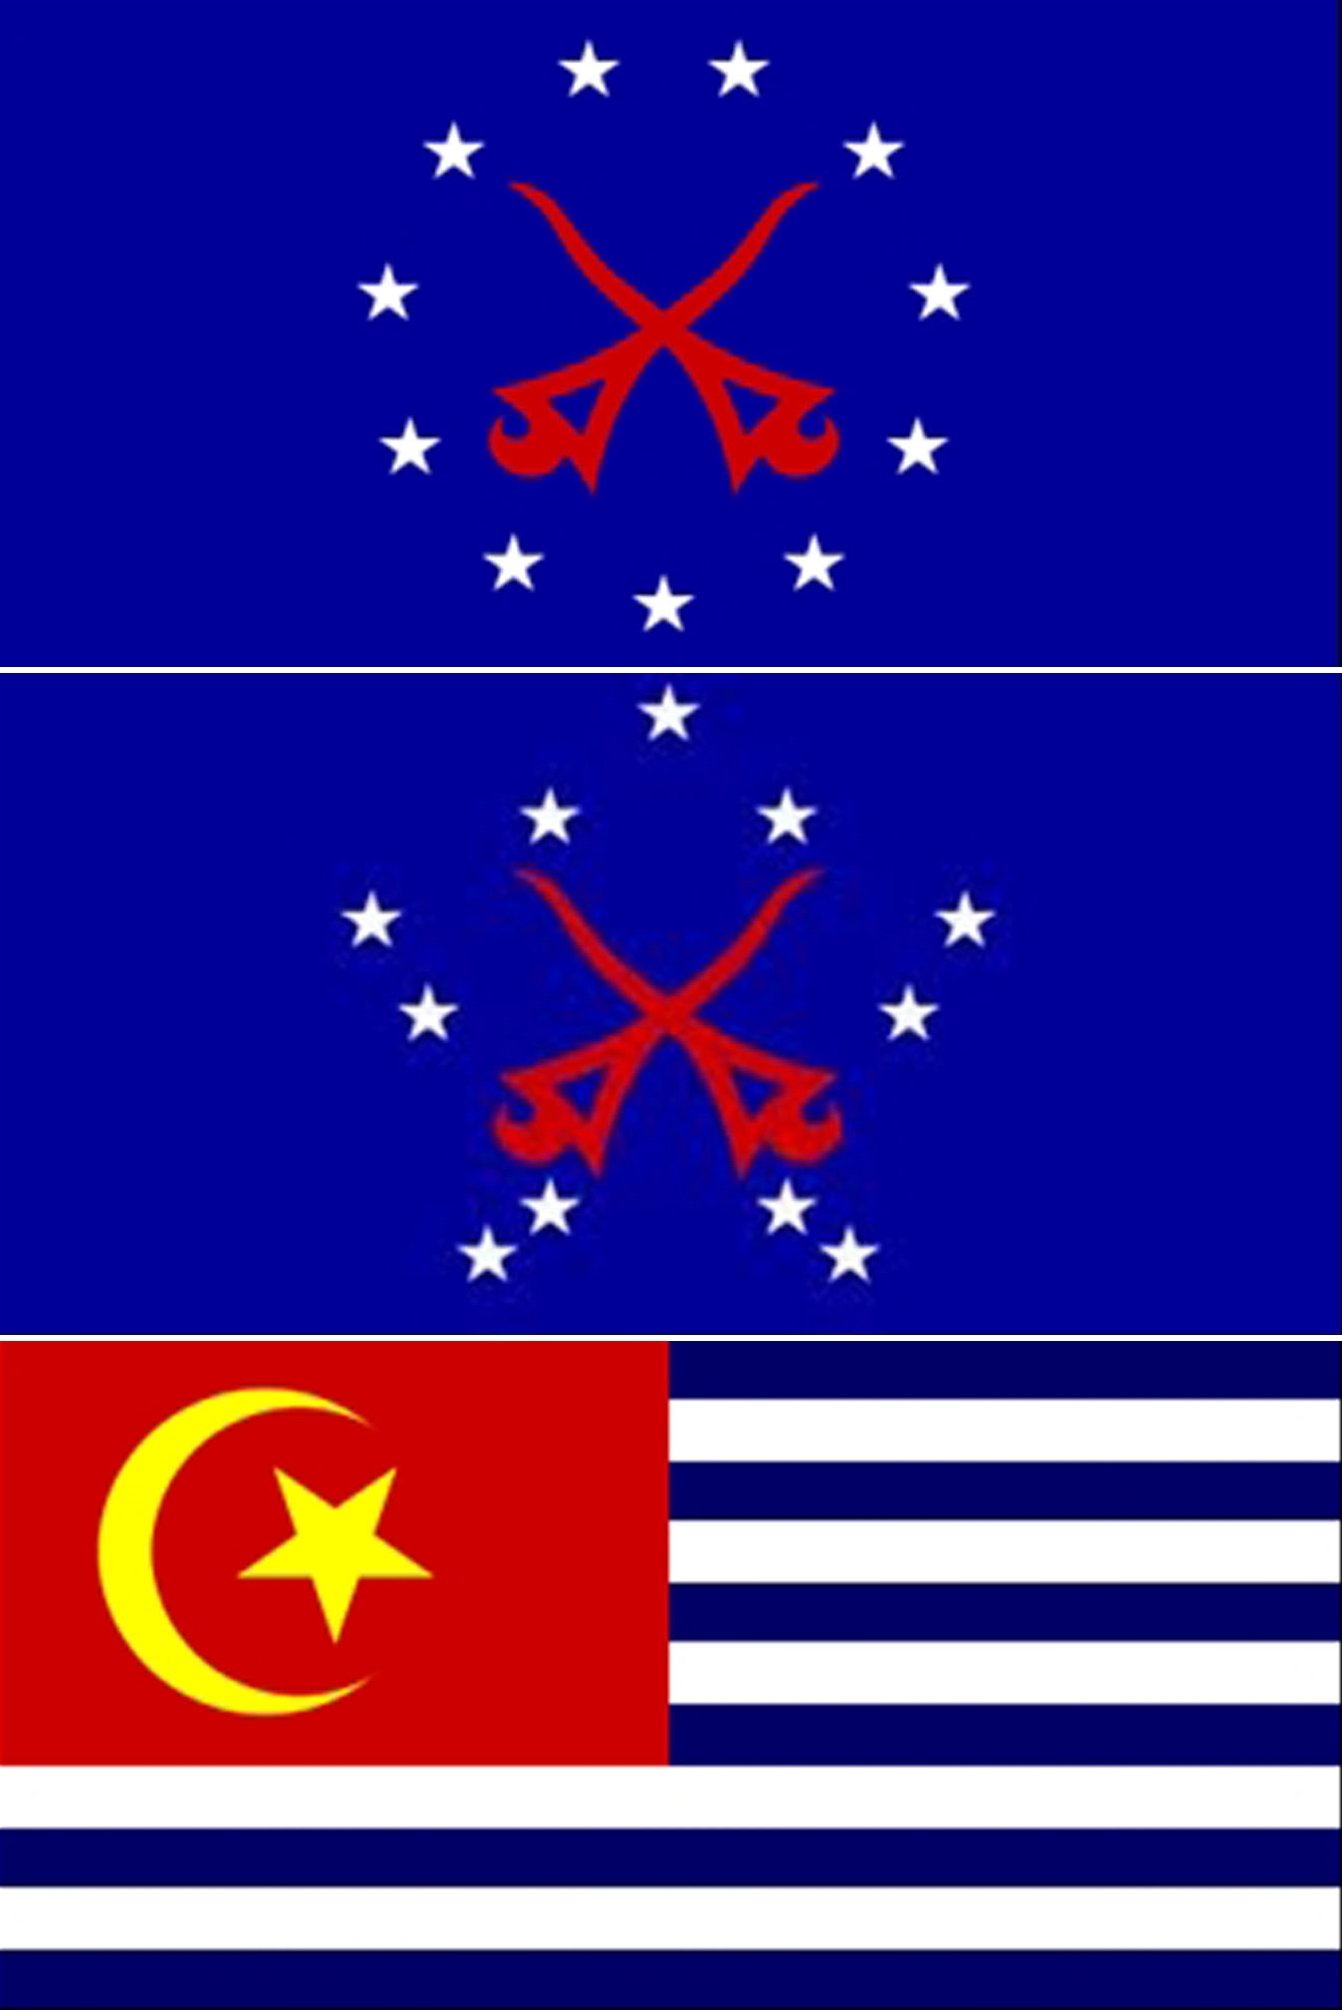 （由上至下）第一份设计：两把相交的马来短剑在中央，被11颗五角星围绕。 第二份设计：与第一个设计相差不大，为11颗五角星围绕环绕两圈，位于中央的两把相交马来短剑。 第三份设计：6蓝色和5白色条纹，左上角背景为红色，内有黄色星月。